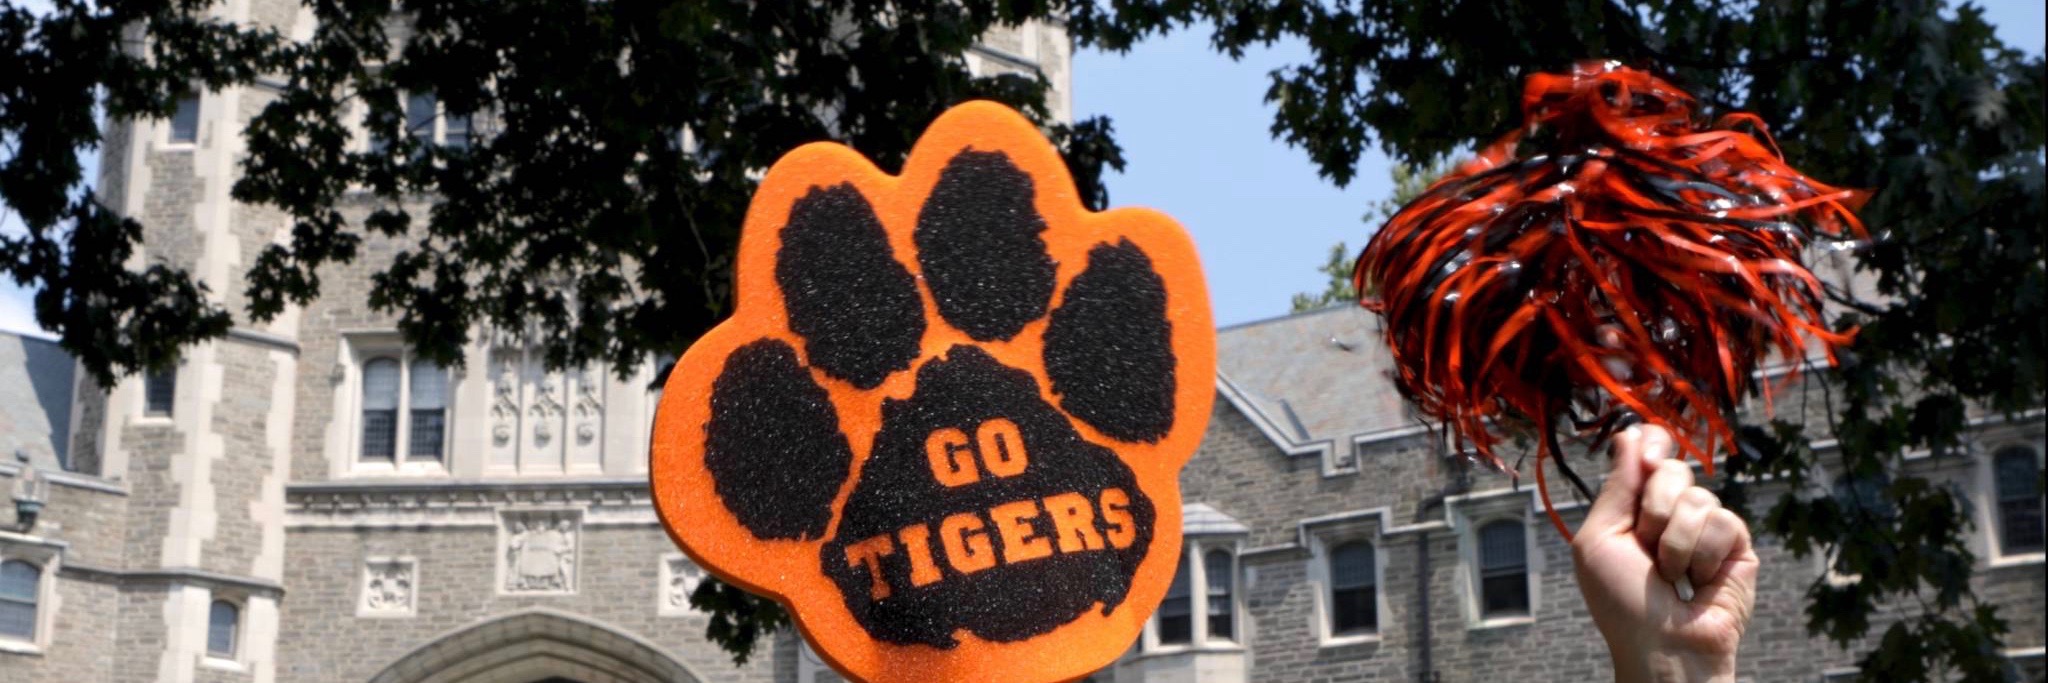 Go Tigers Princeton Campus